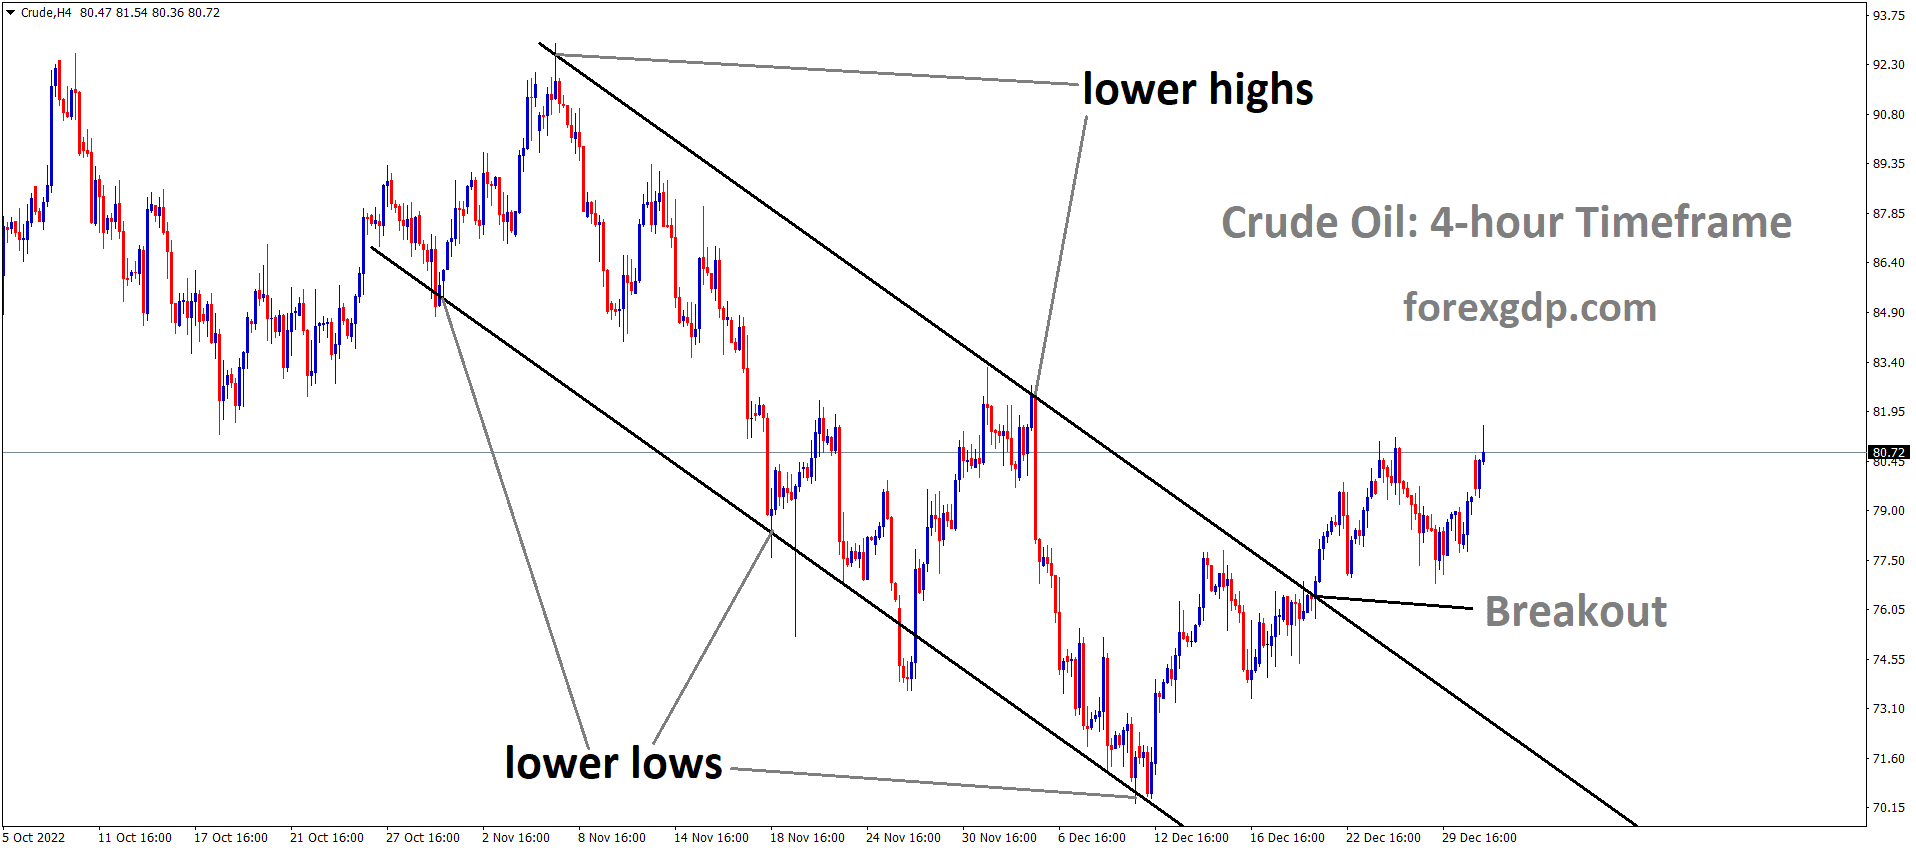 Crude oil price has broken the Descending channel in Upside